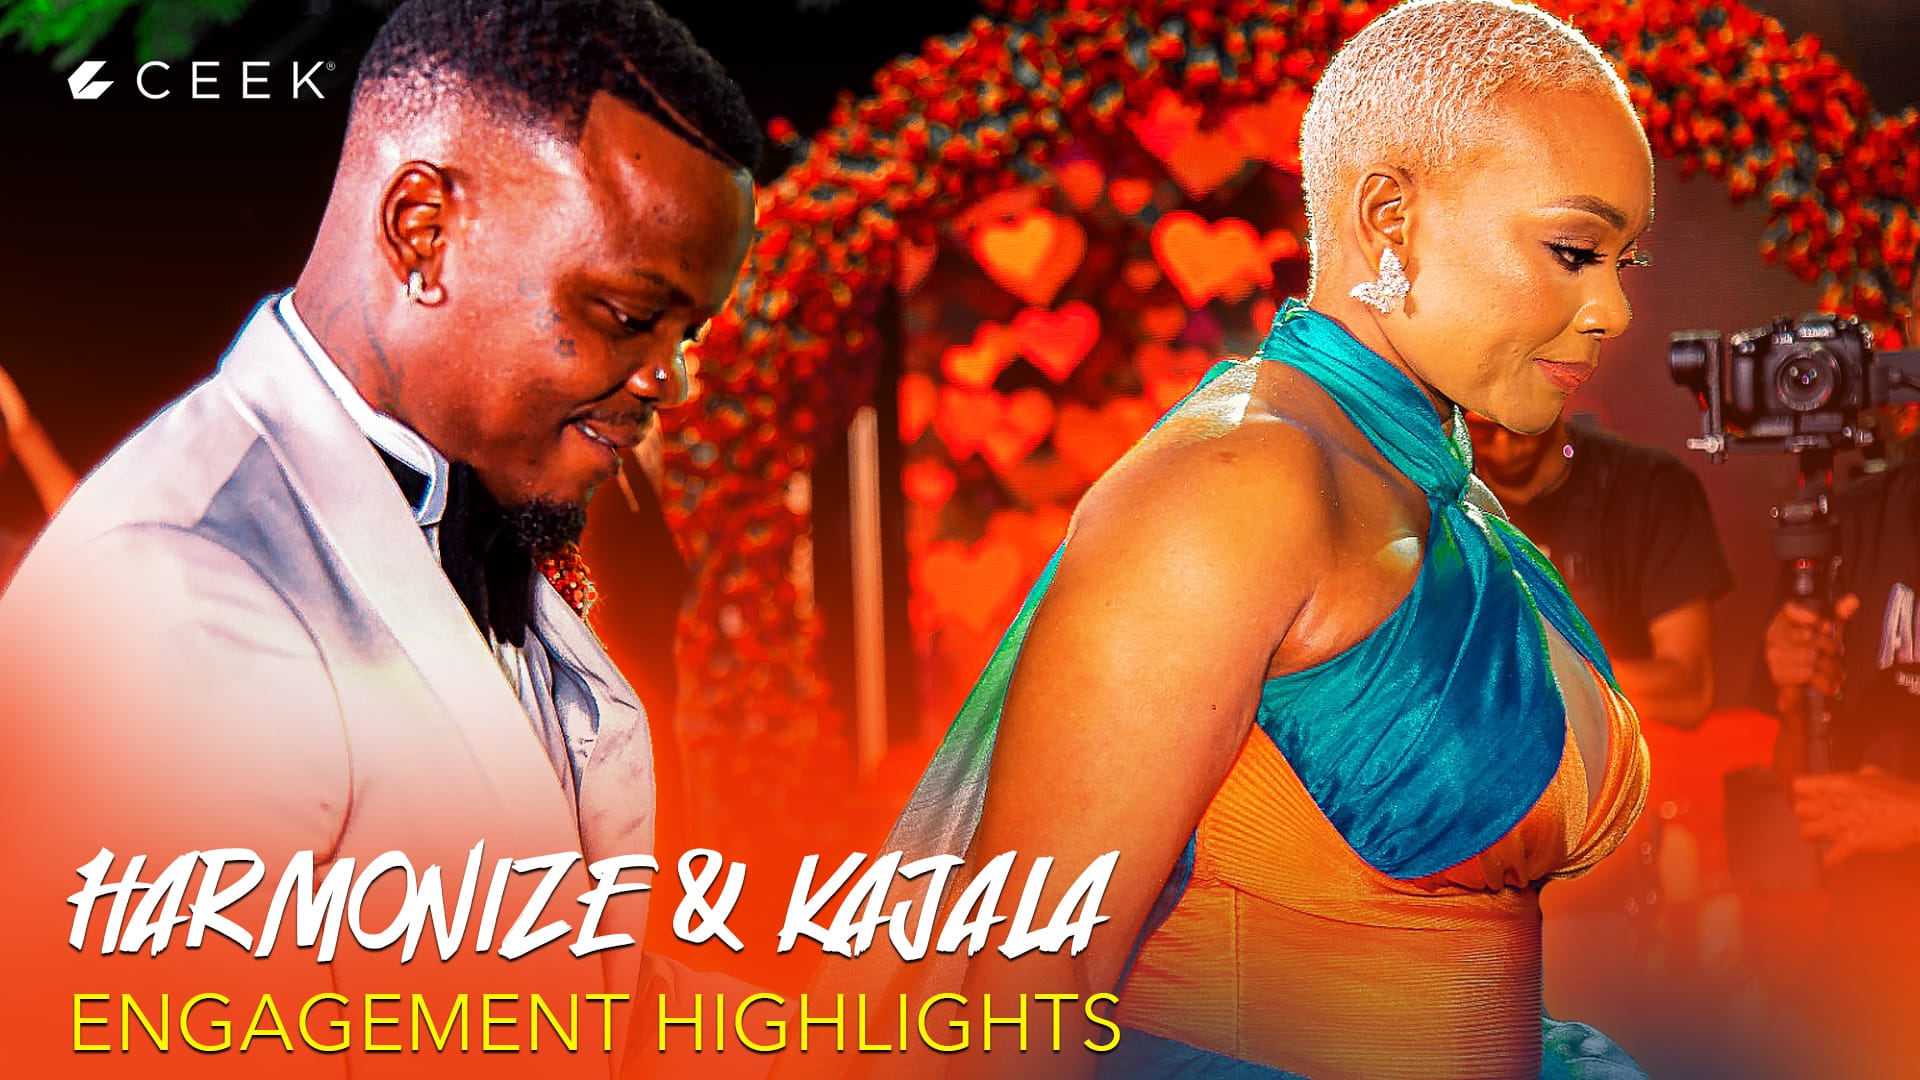 Harmonize Harmonize and Kajala Engagement Highlights